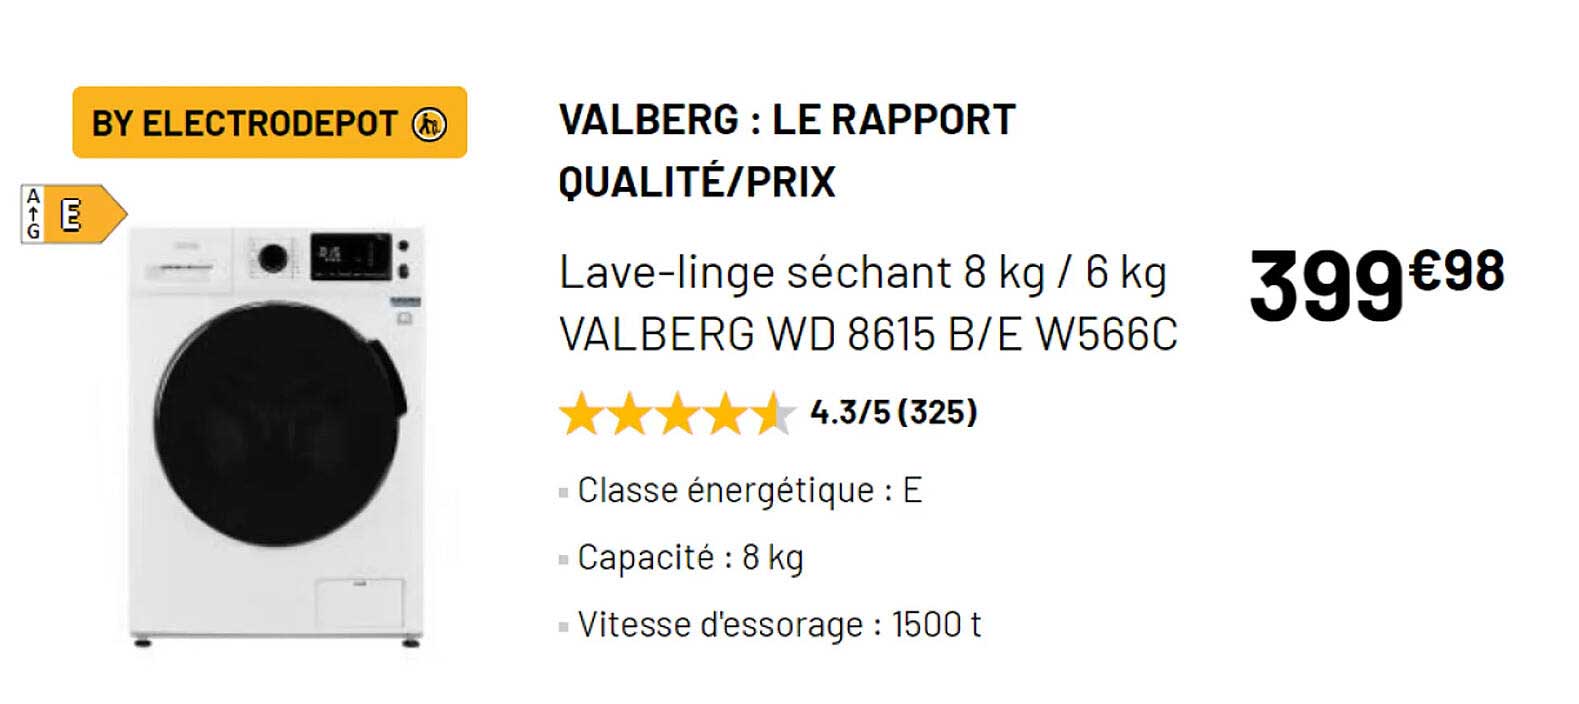 Lave-linge séchant 8 kg / 6 kg VALBERG WD 8615 B/E W566C - Electro Dépôt